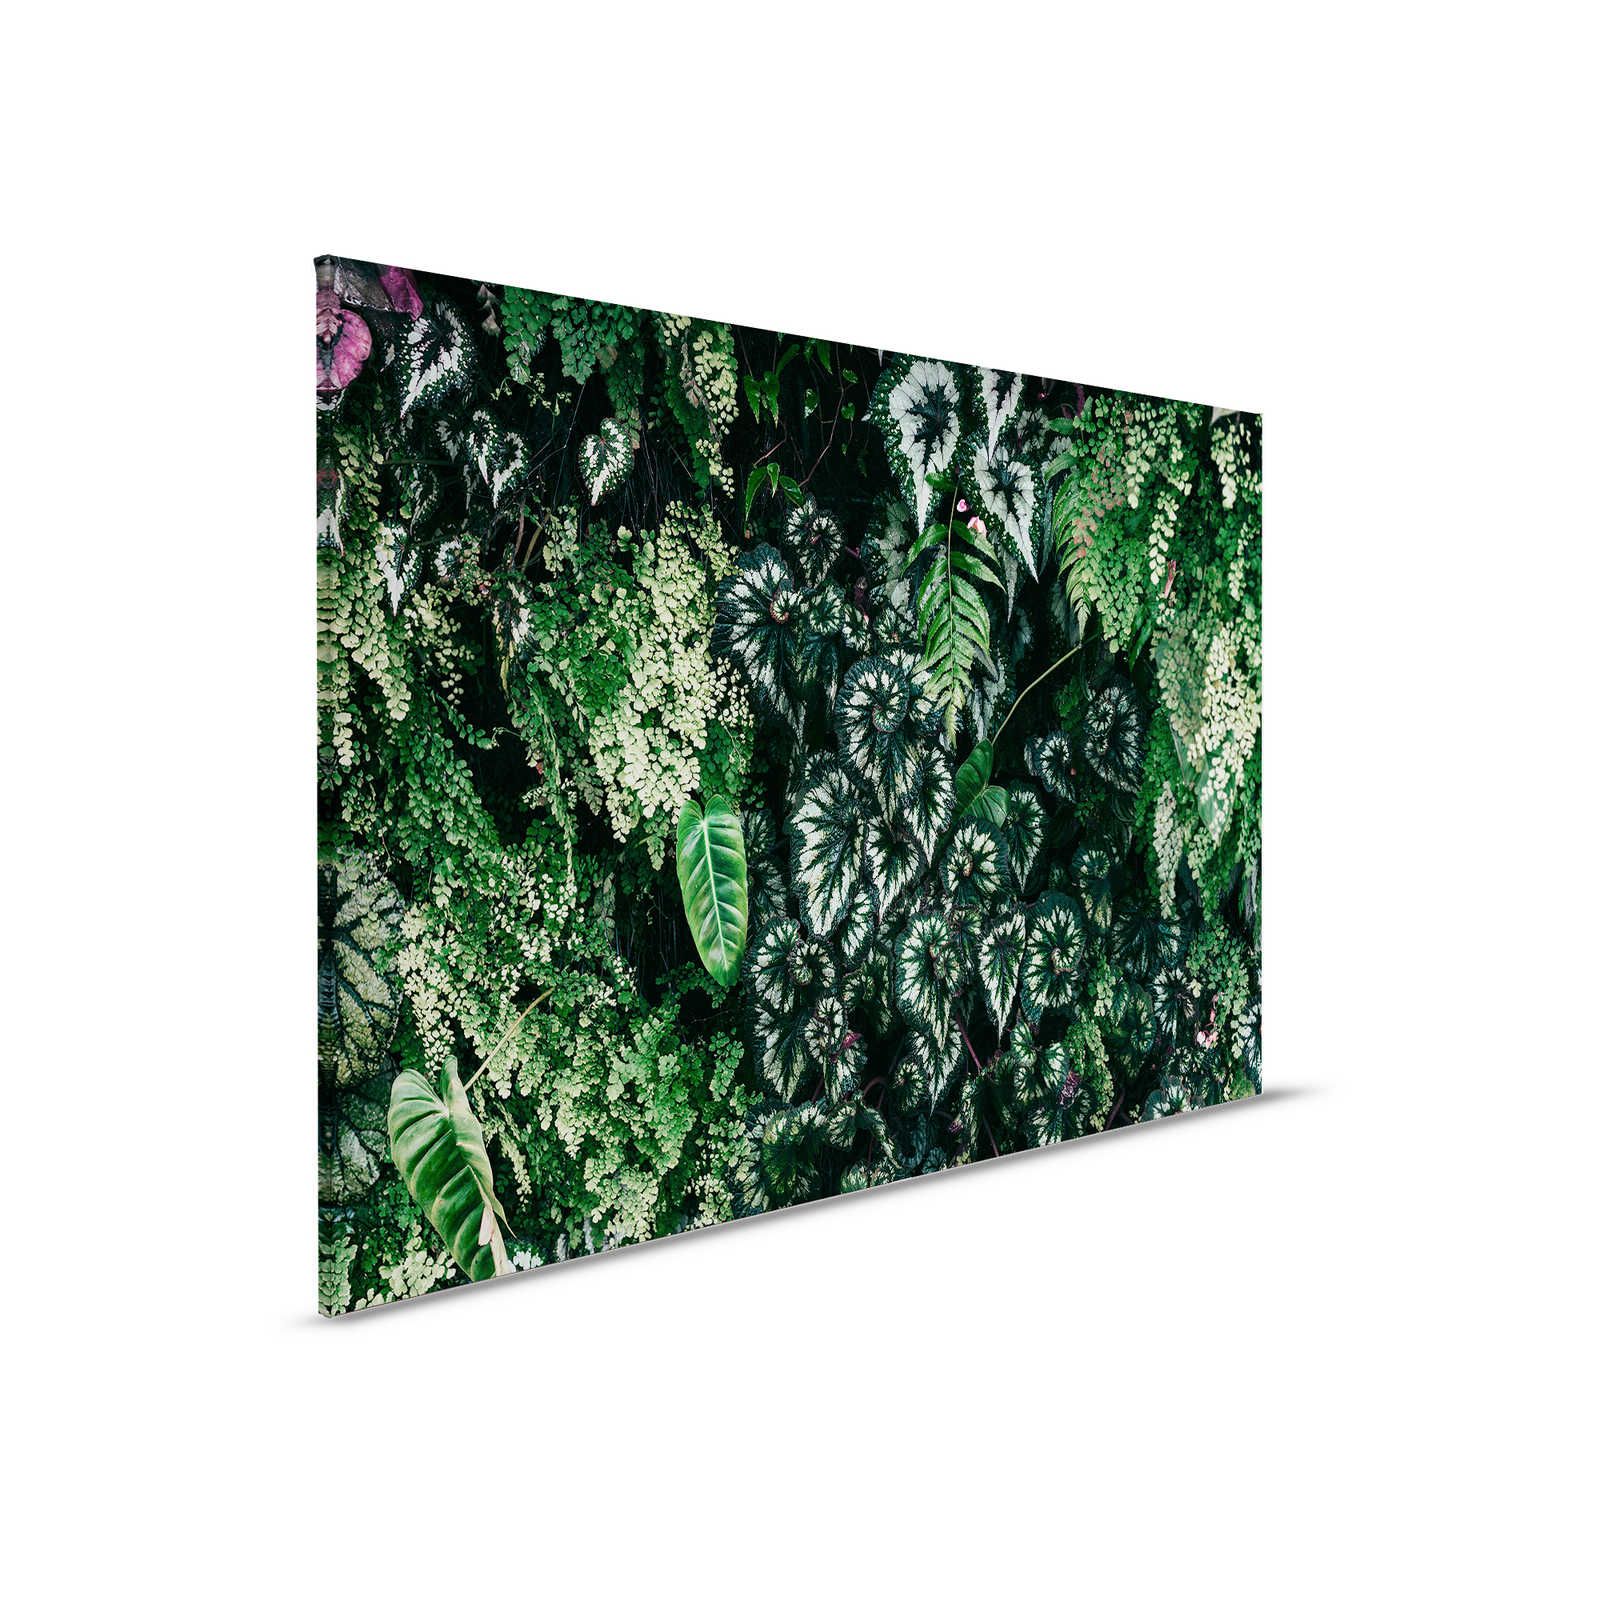 Deep Green 2 - Canvas schilderij Loofbos, varens & hangplanten - 0.90 m x 0.60 m
